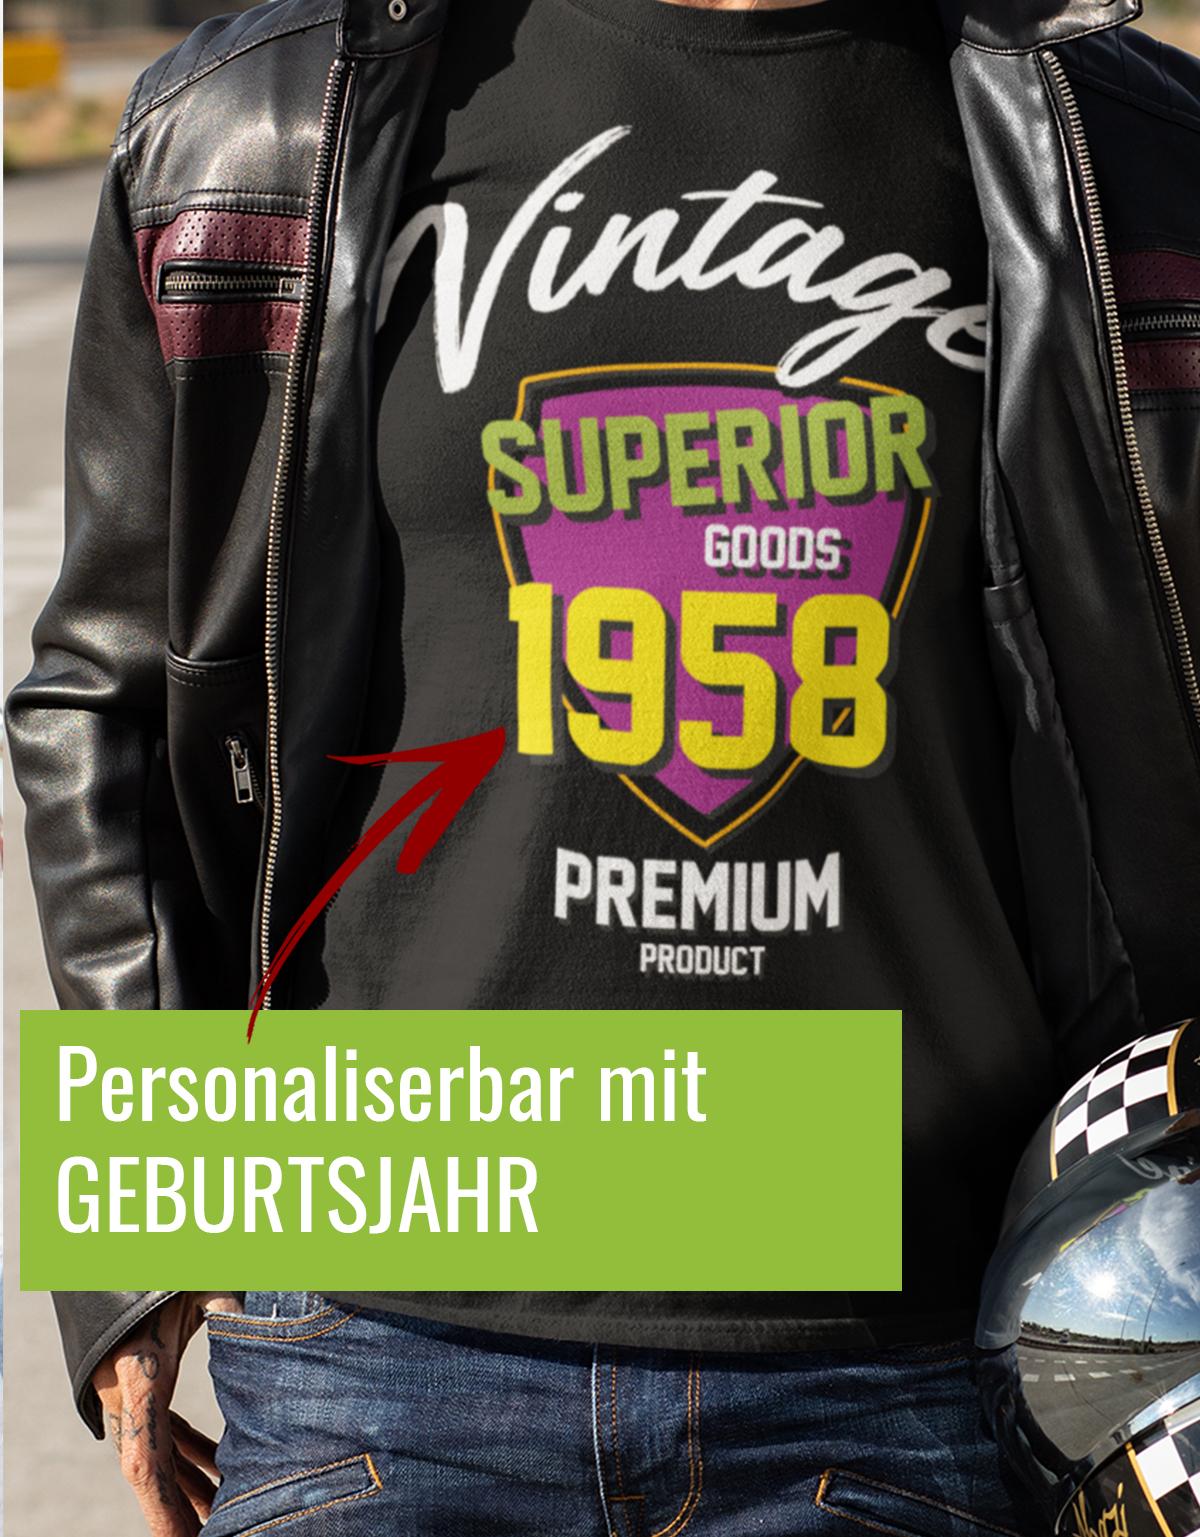 Geburtstag Tshirt für Männer Vintage Superior goods Personalisiert mit Geburtsjahr Premium Product